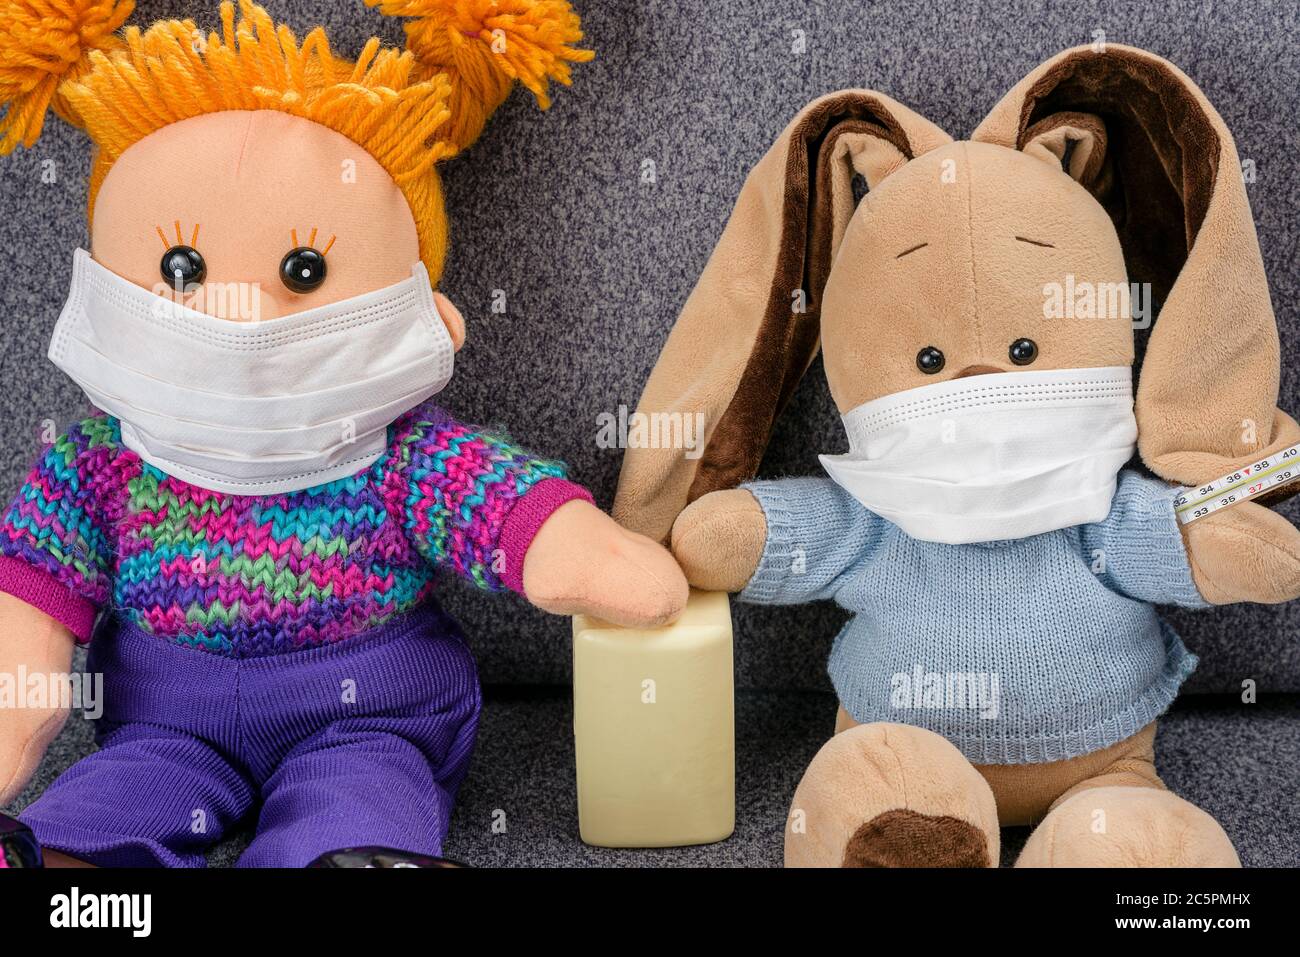 La máscara protectora protege contra el coronvirus y la epidemia de gripe. Concepto de lavarse las manos con jabón después de comunicarse entre sí. Juguetes blandos si Foto de stock